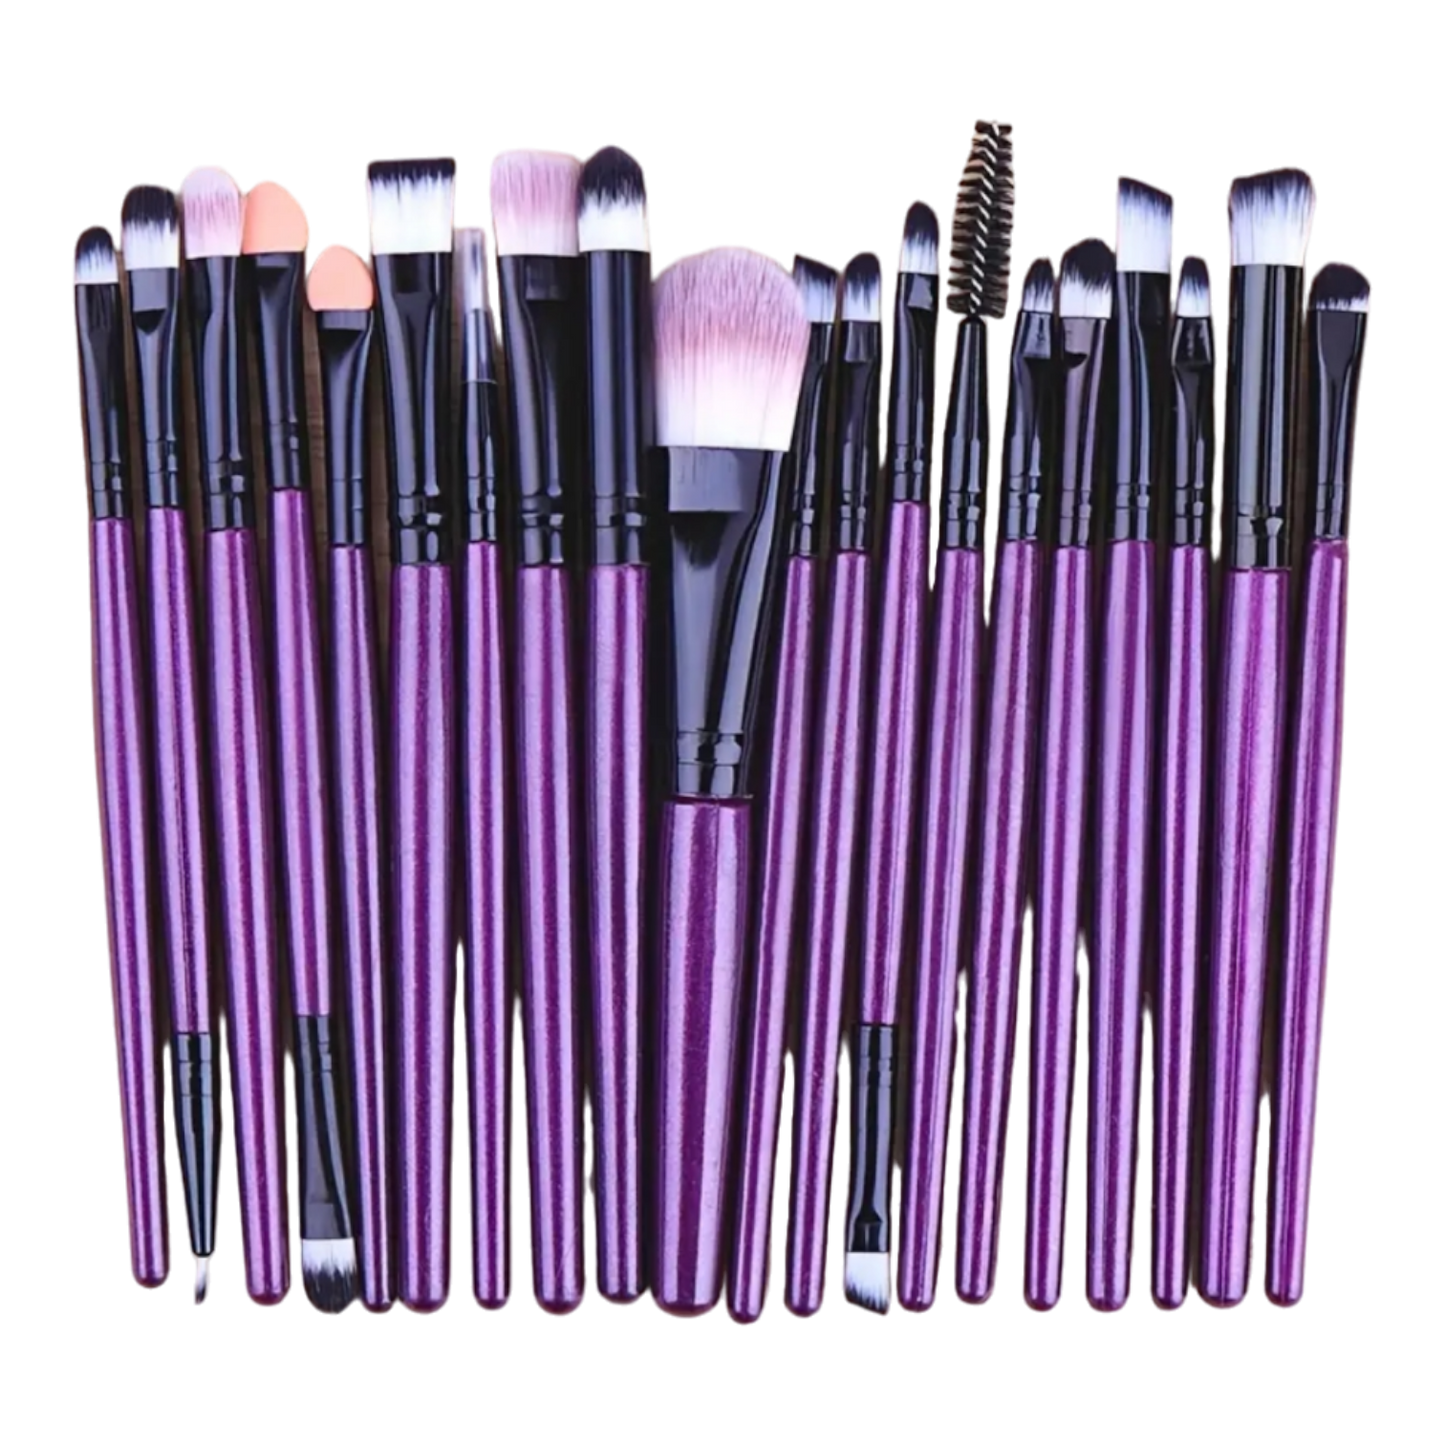 MAKEUP BRUSHES | Purple & Black | 20 pieces